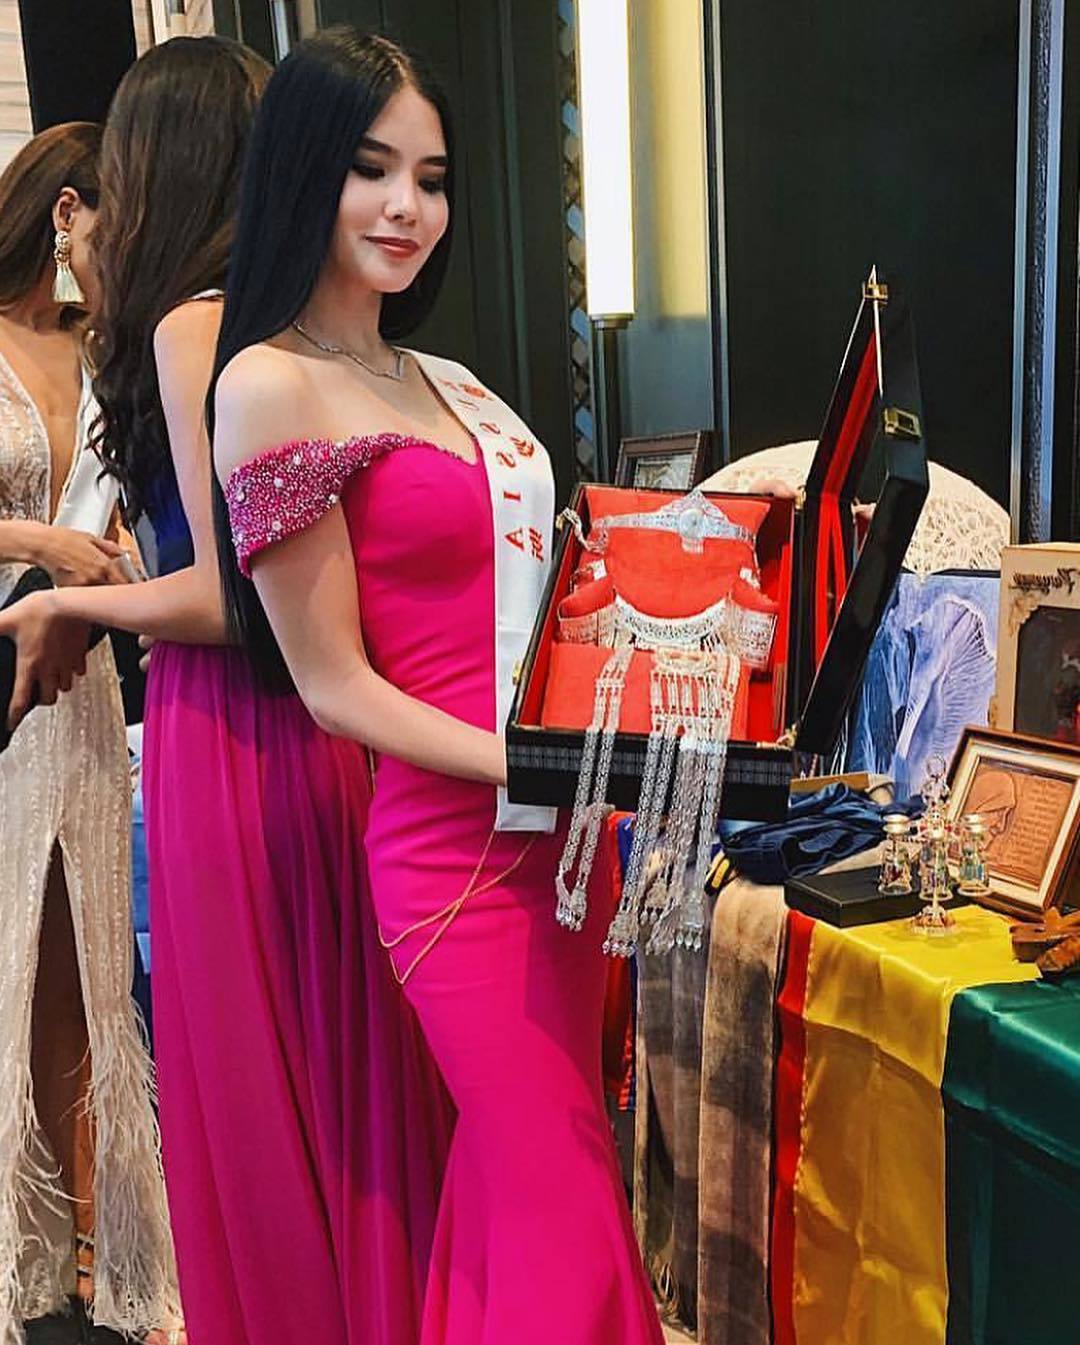 На конкурсе "Мисс мира" якутский серебряный набор украшений был признан одним из самых интересных подарков